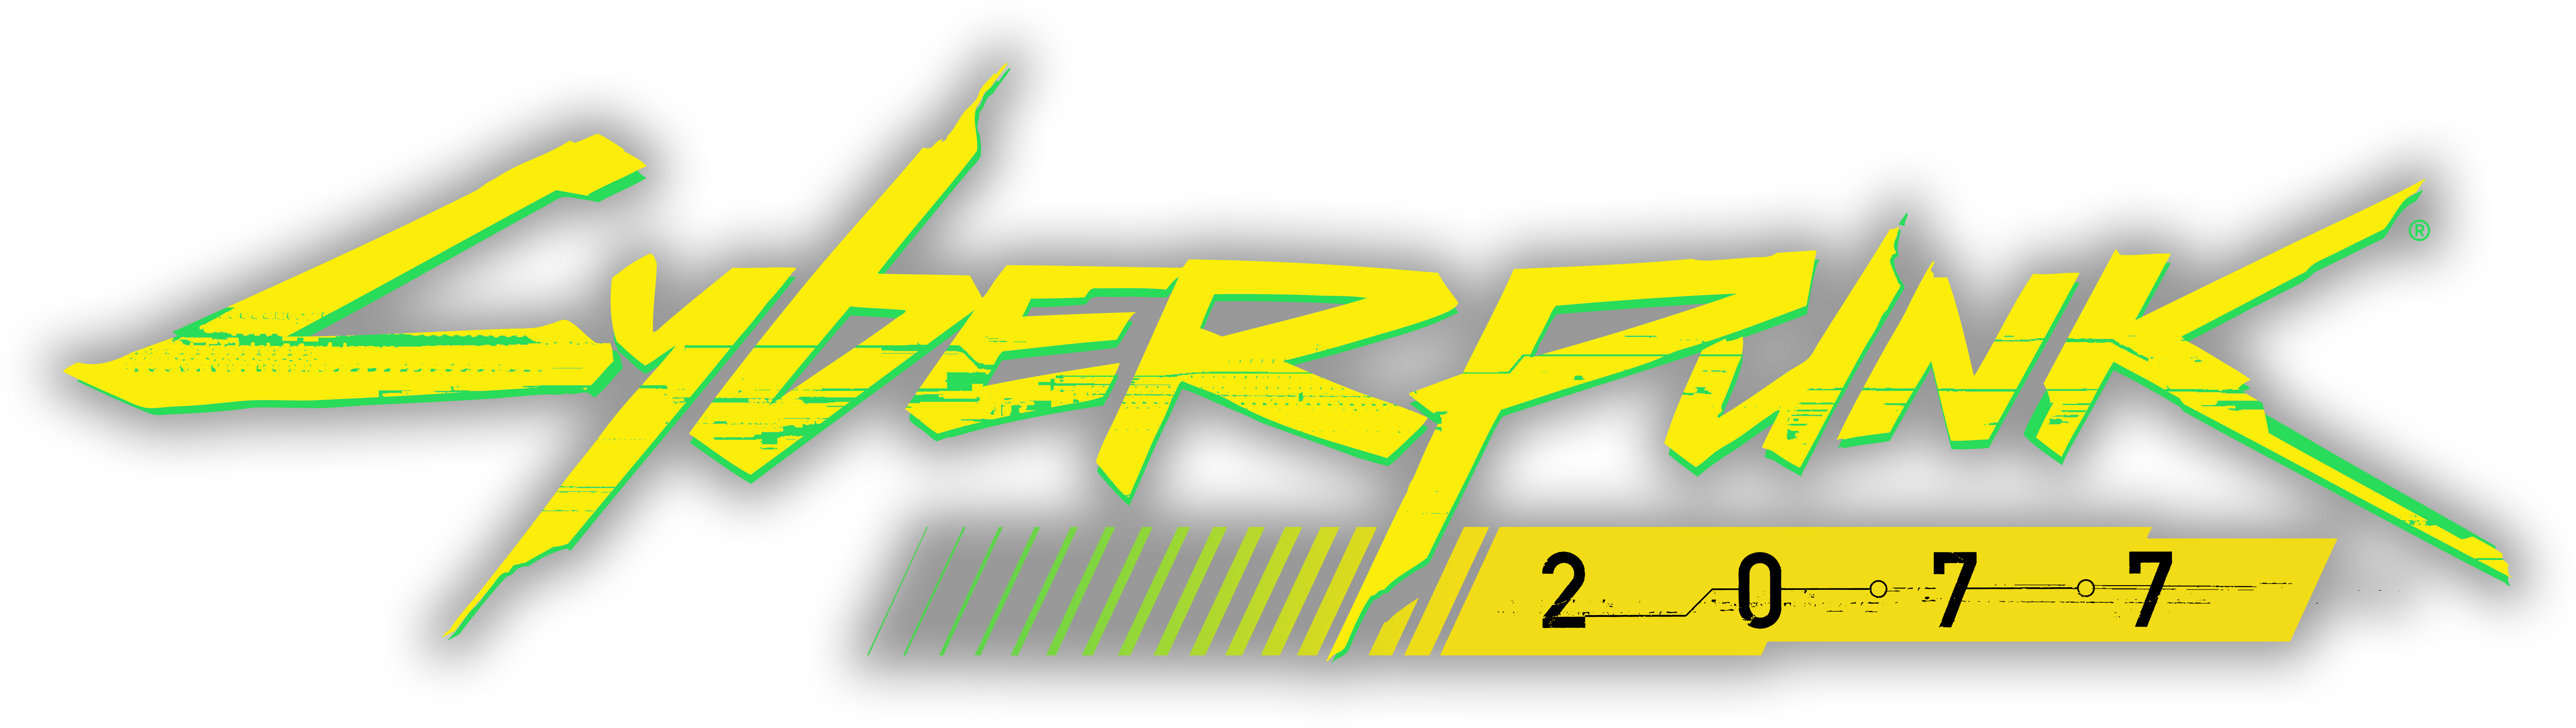 Cyberpunk logo animation фото 29